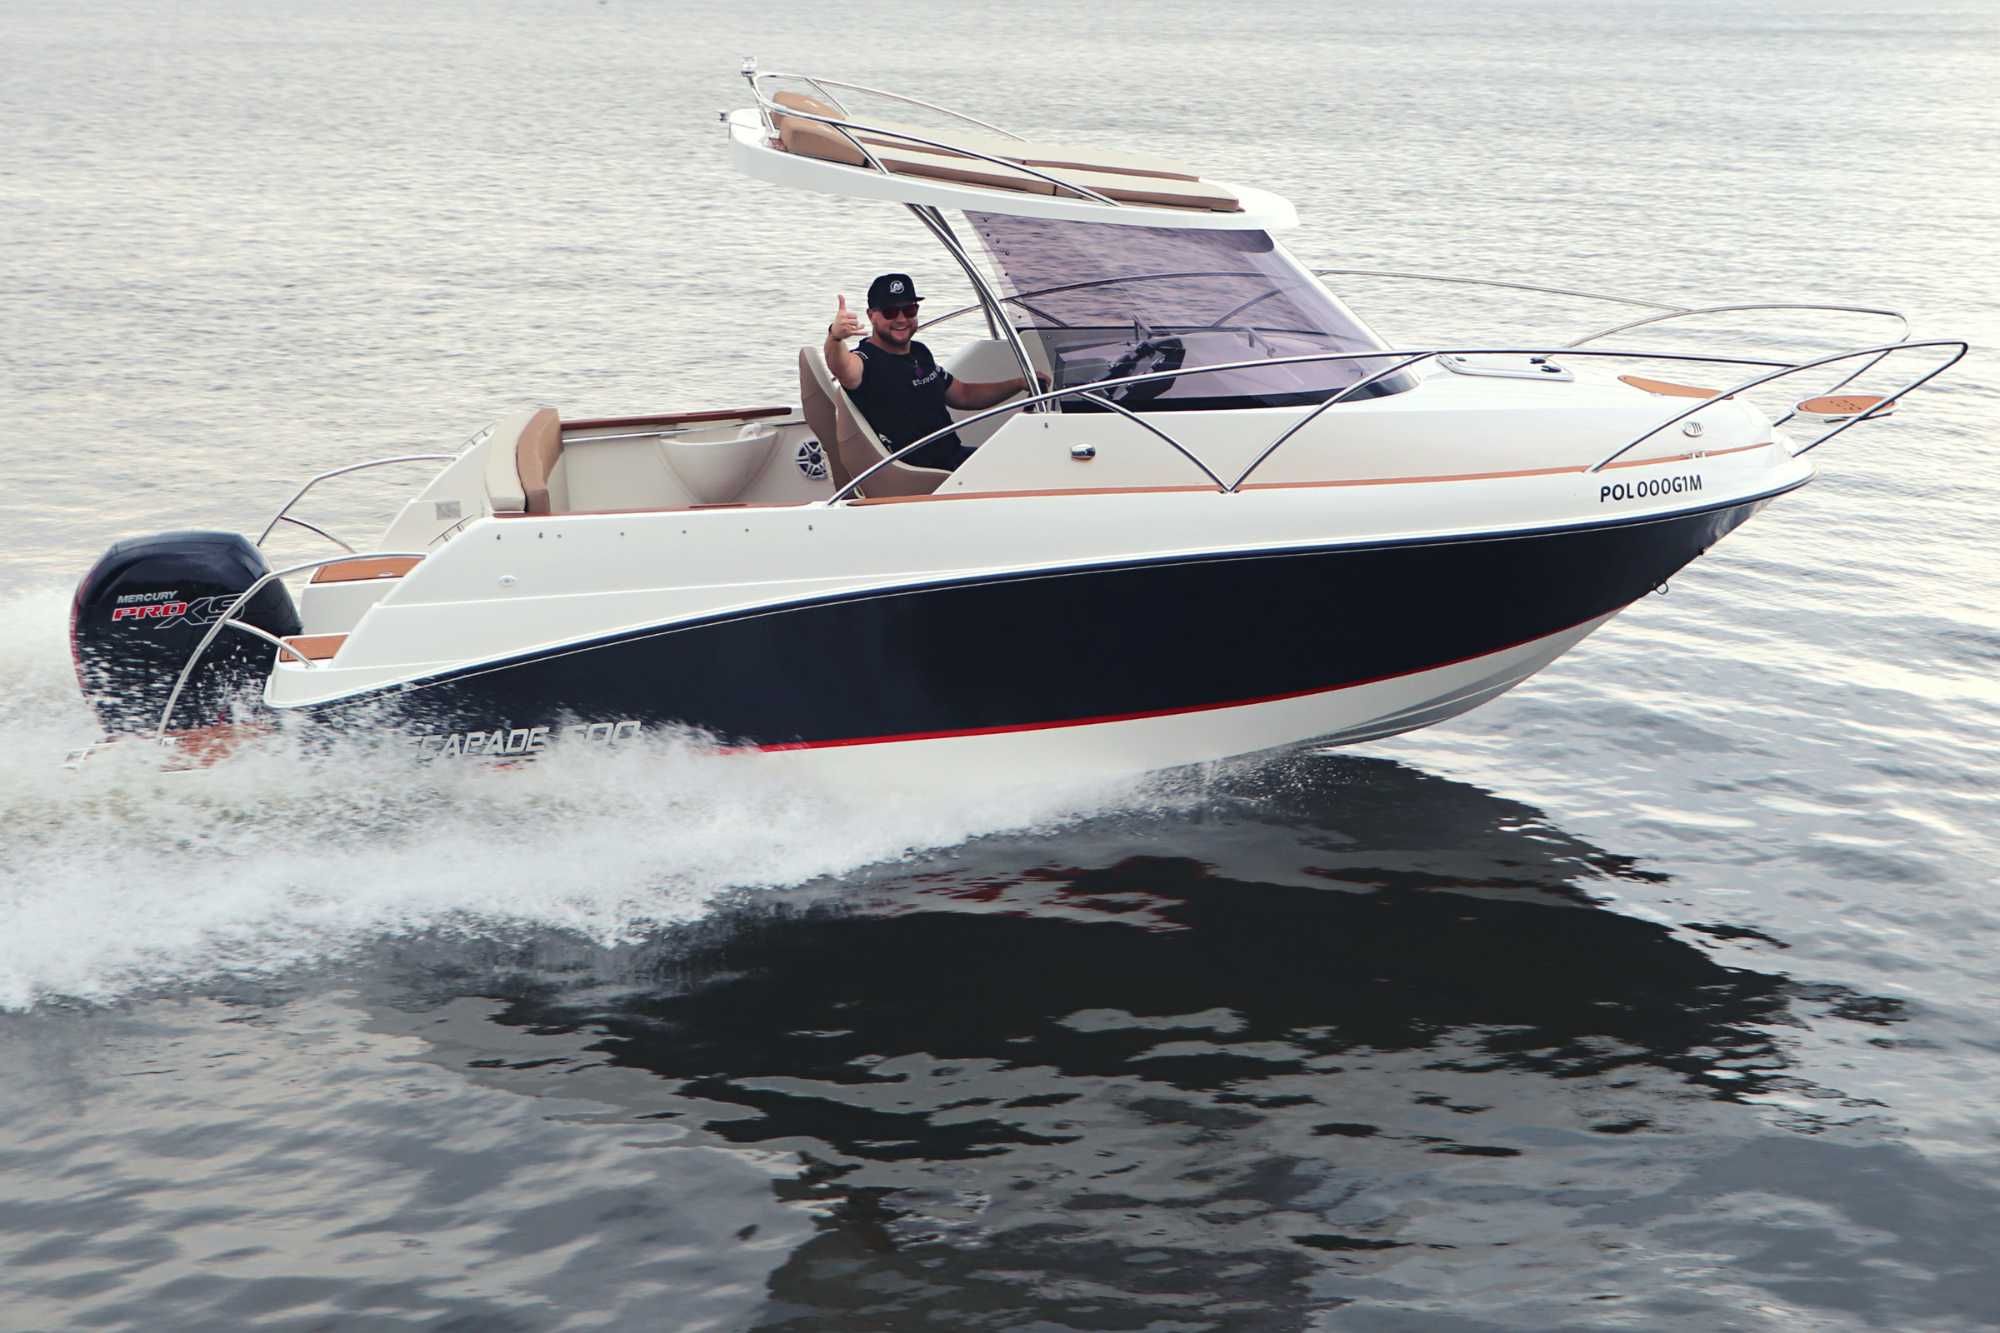 Nowa łódź motorowa ESCAPADE 600, 6 osobowa, max 200 KM, Eskapader